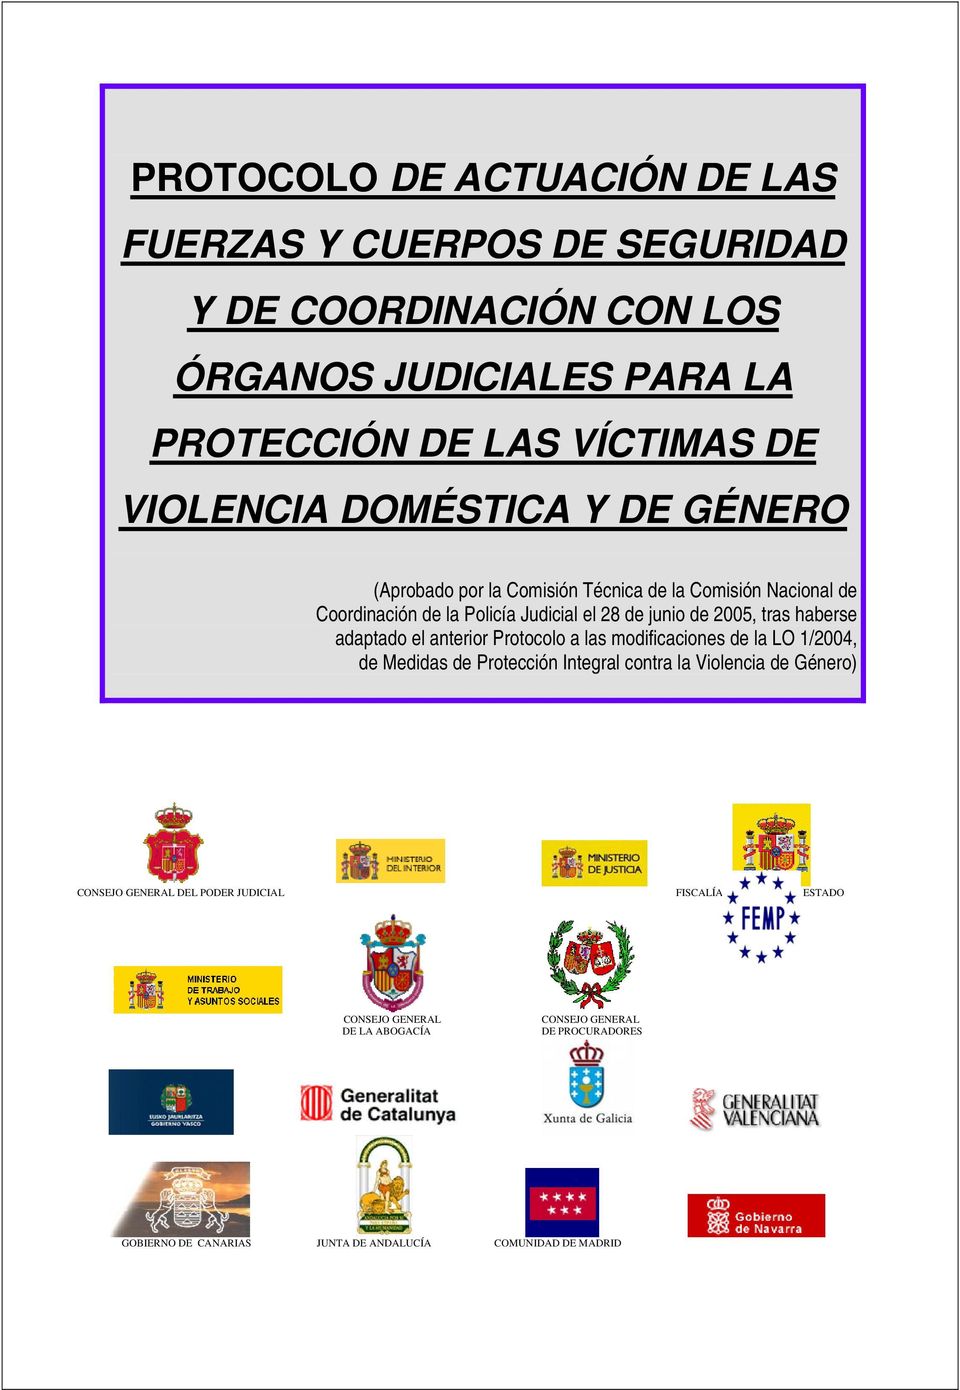 adaptado el anterior Protocolo a las modificaciones de la LO 1/2004, de Medidas de Protección Integral contra la Violencia de Género) CONSEJO GENERAL DEL